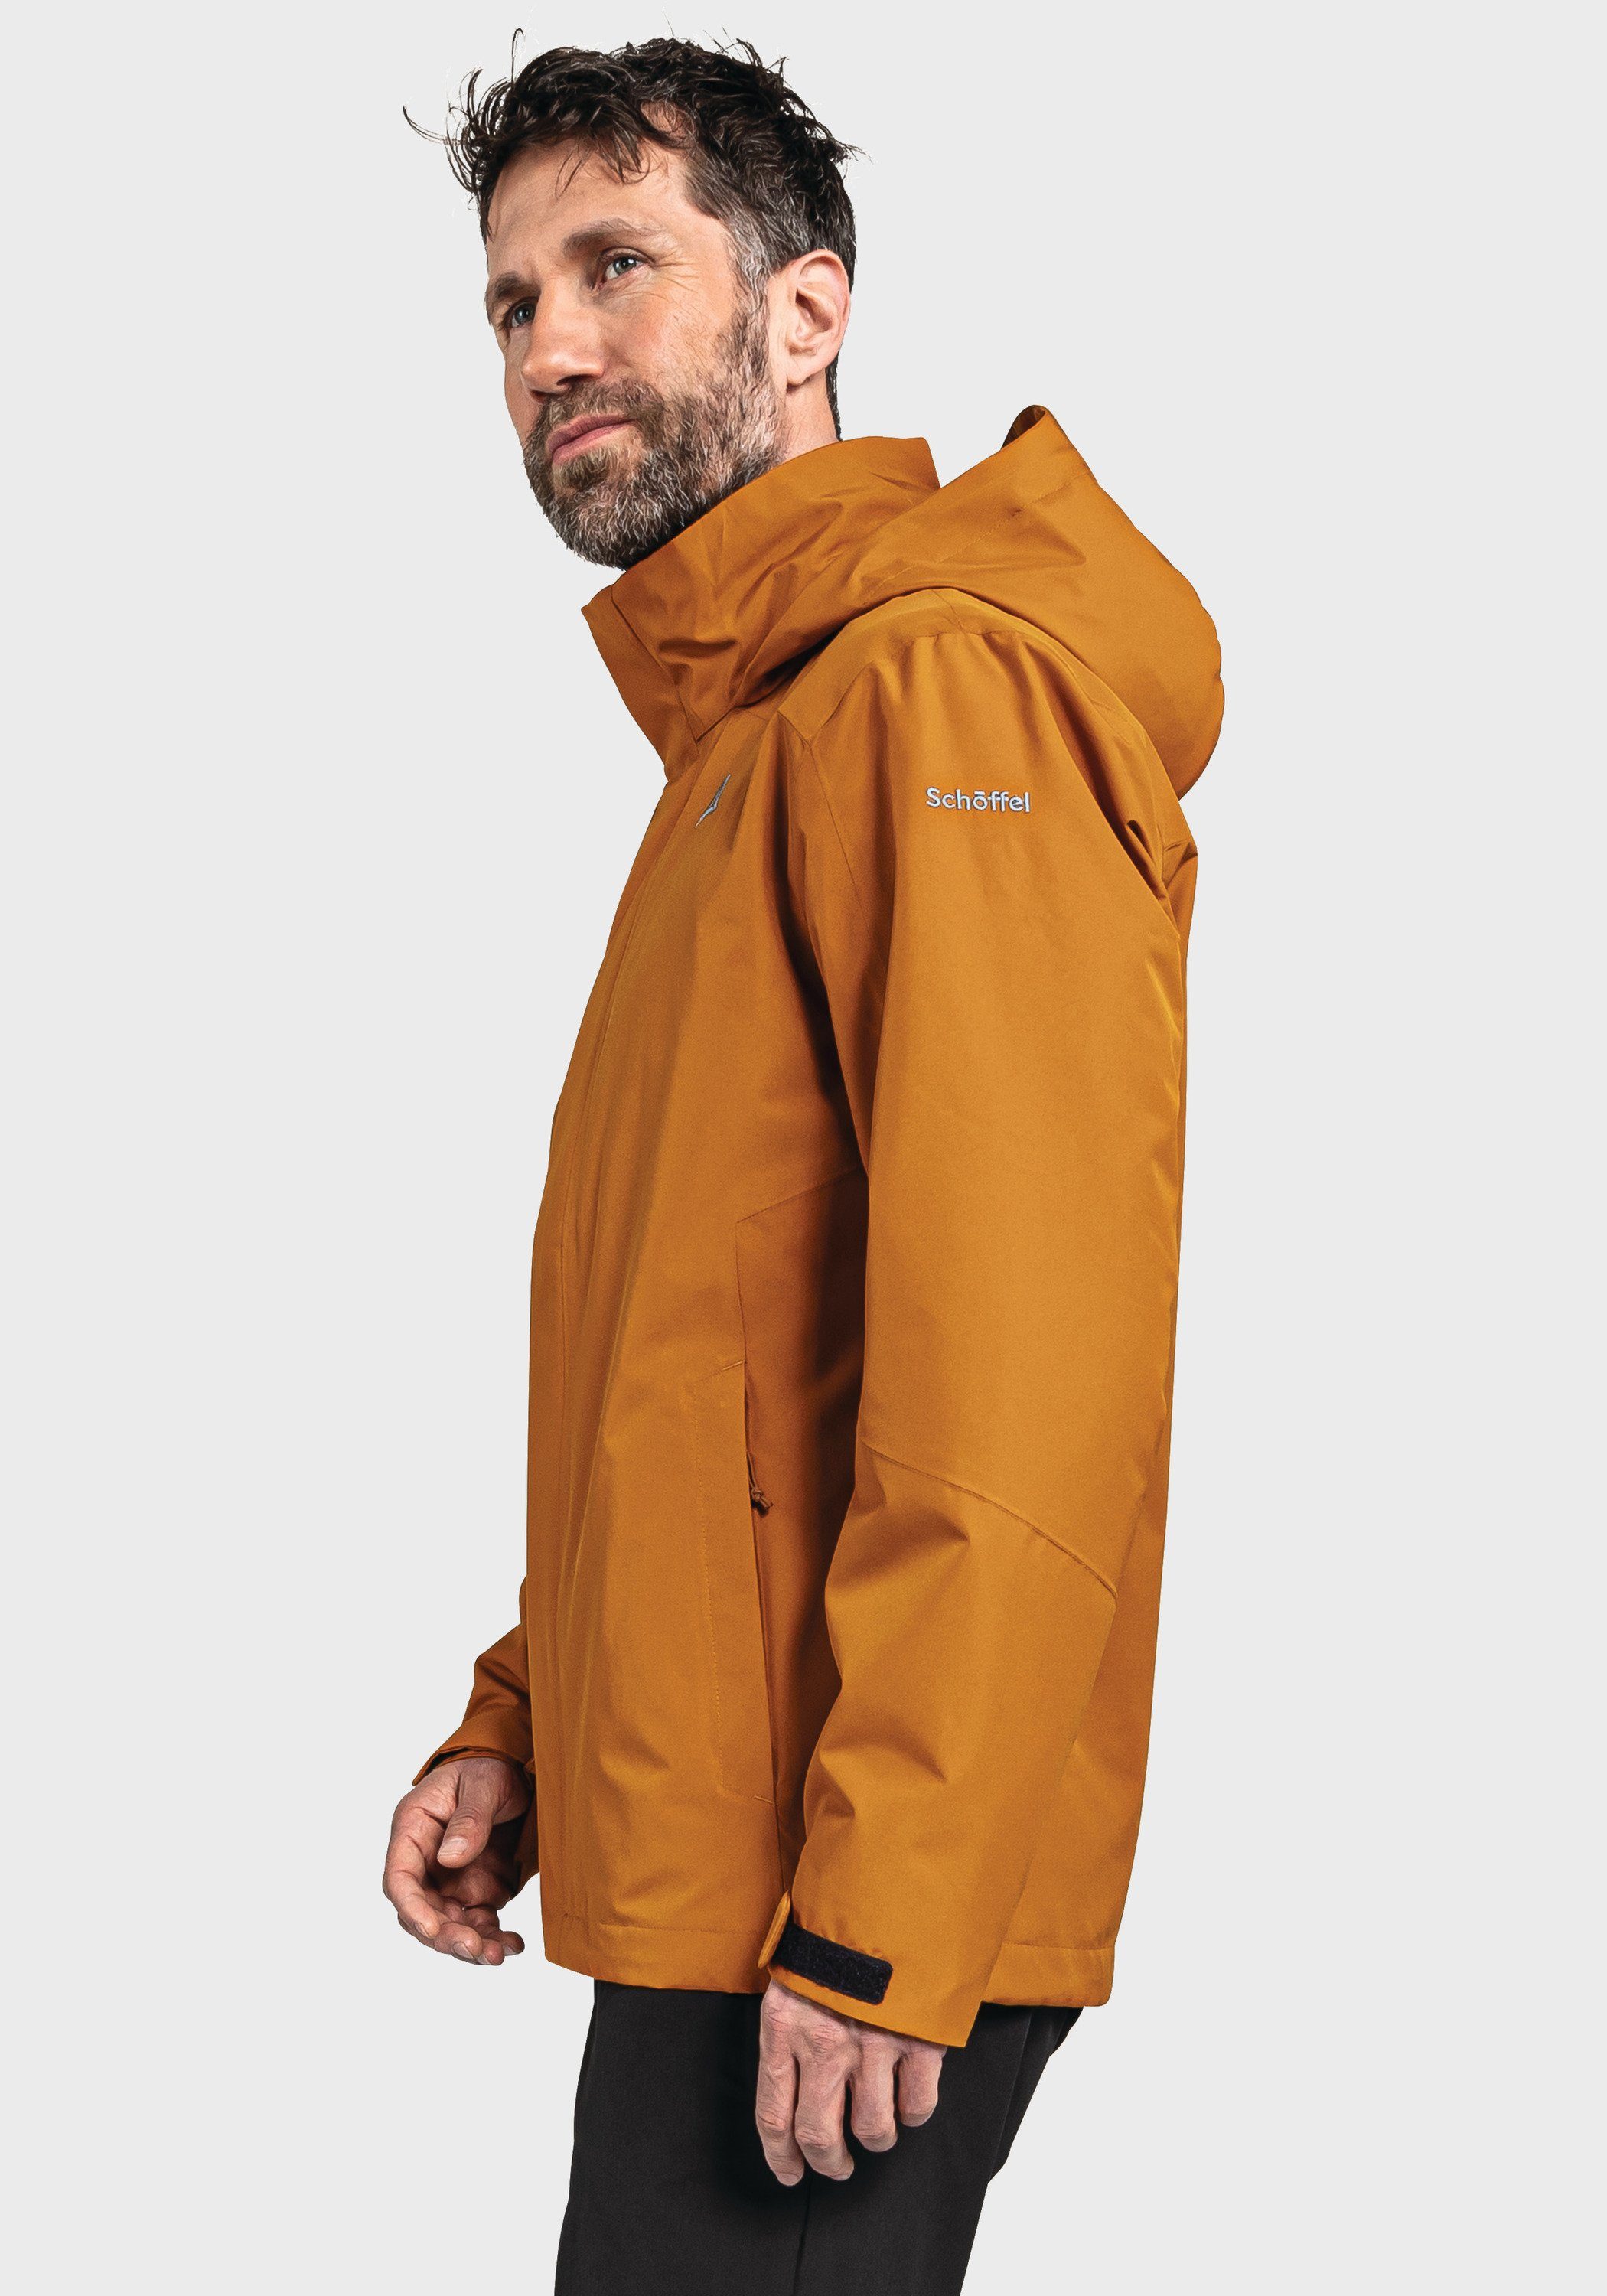 M Doppeljacke Partinello orange Jacket Schöffel 3in1